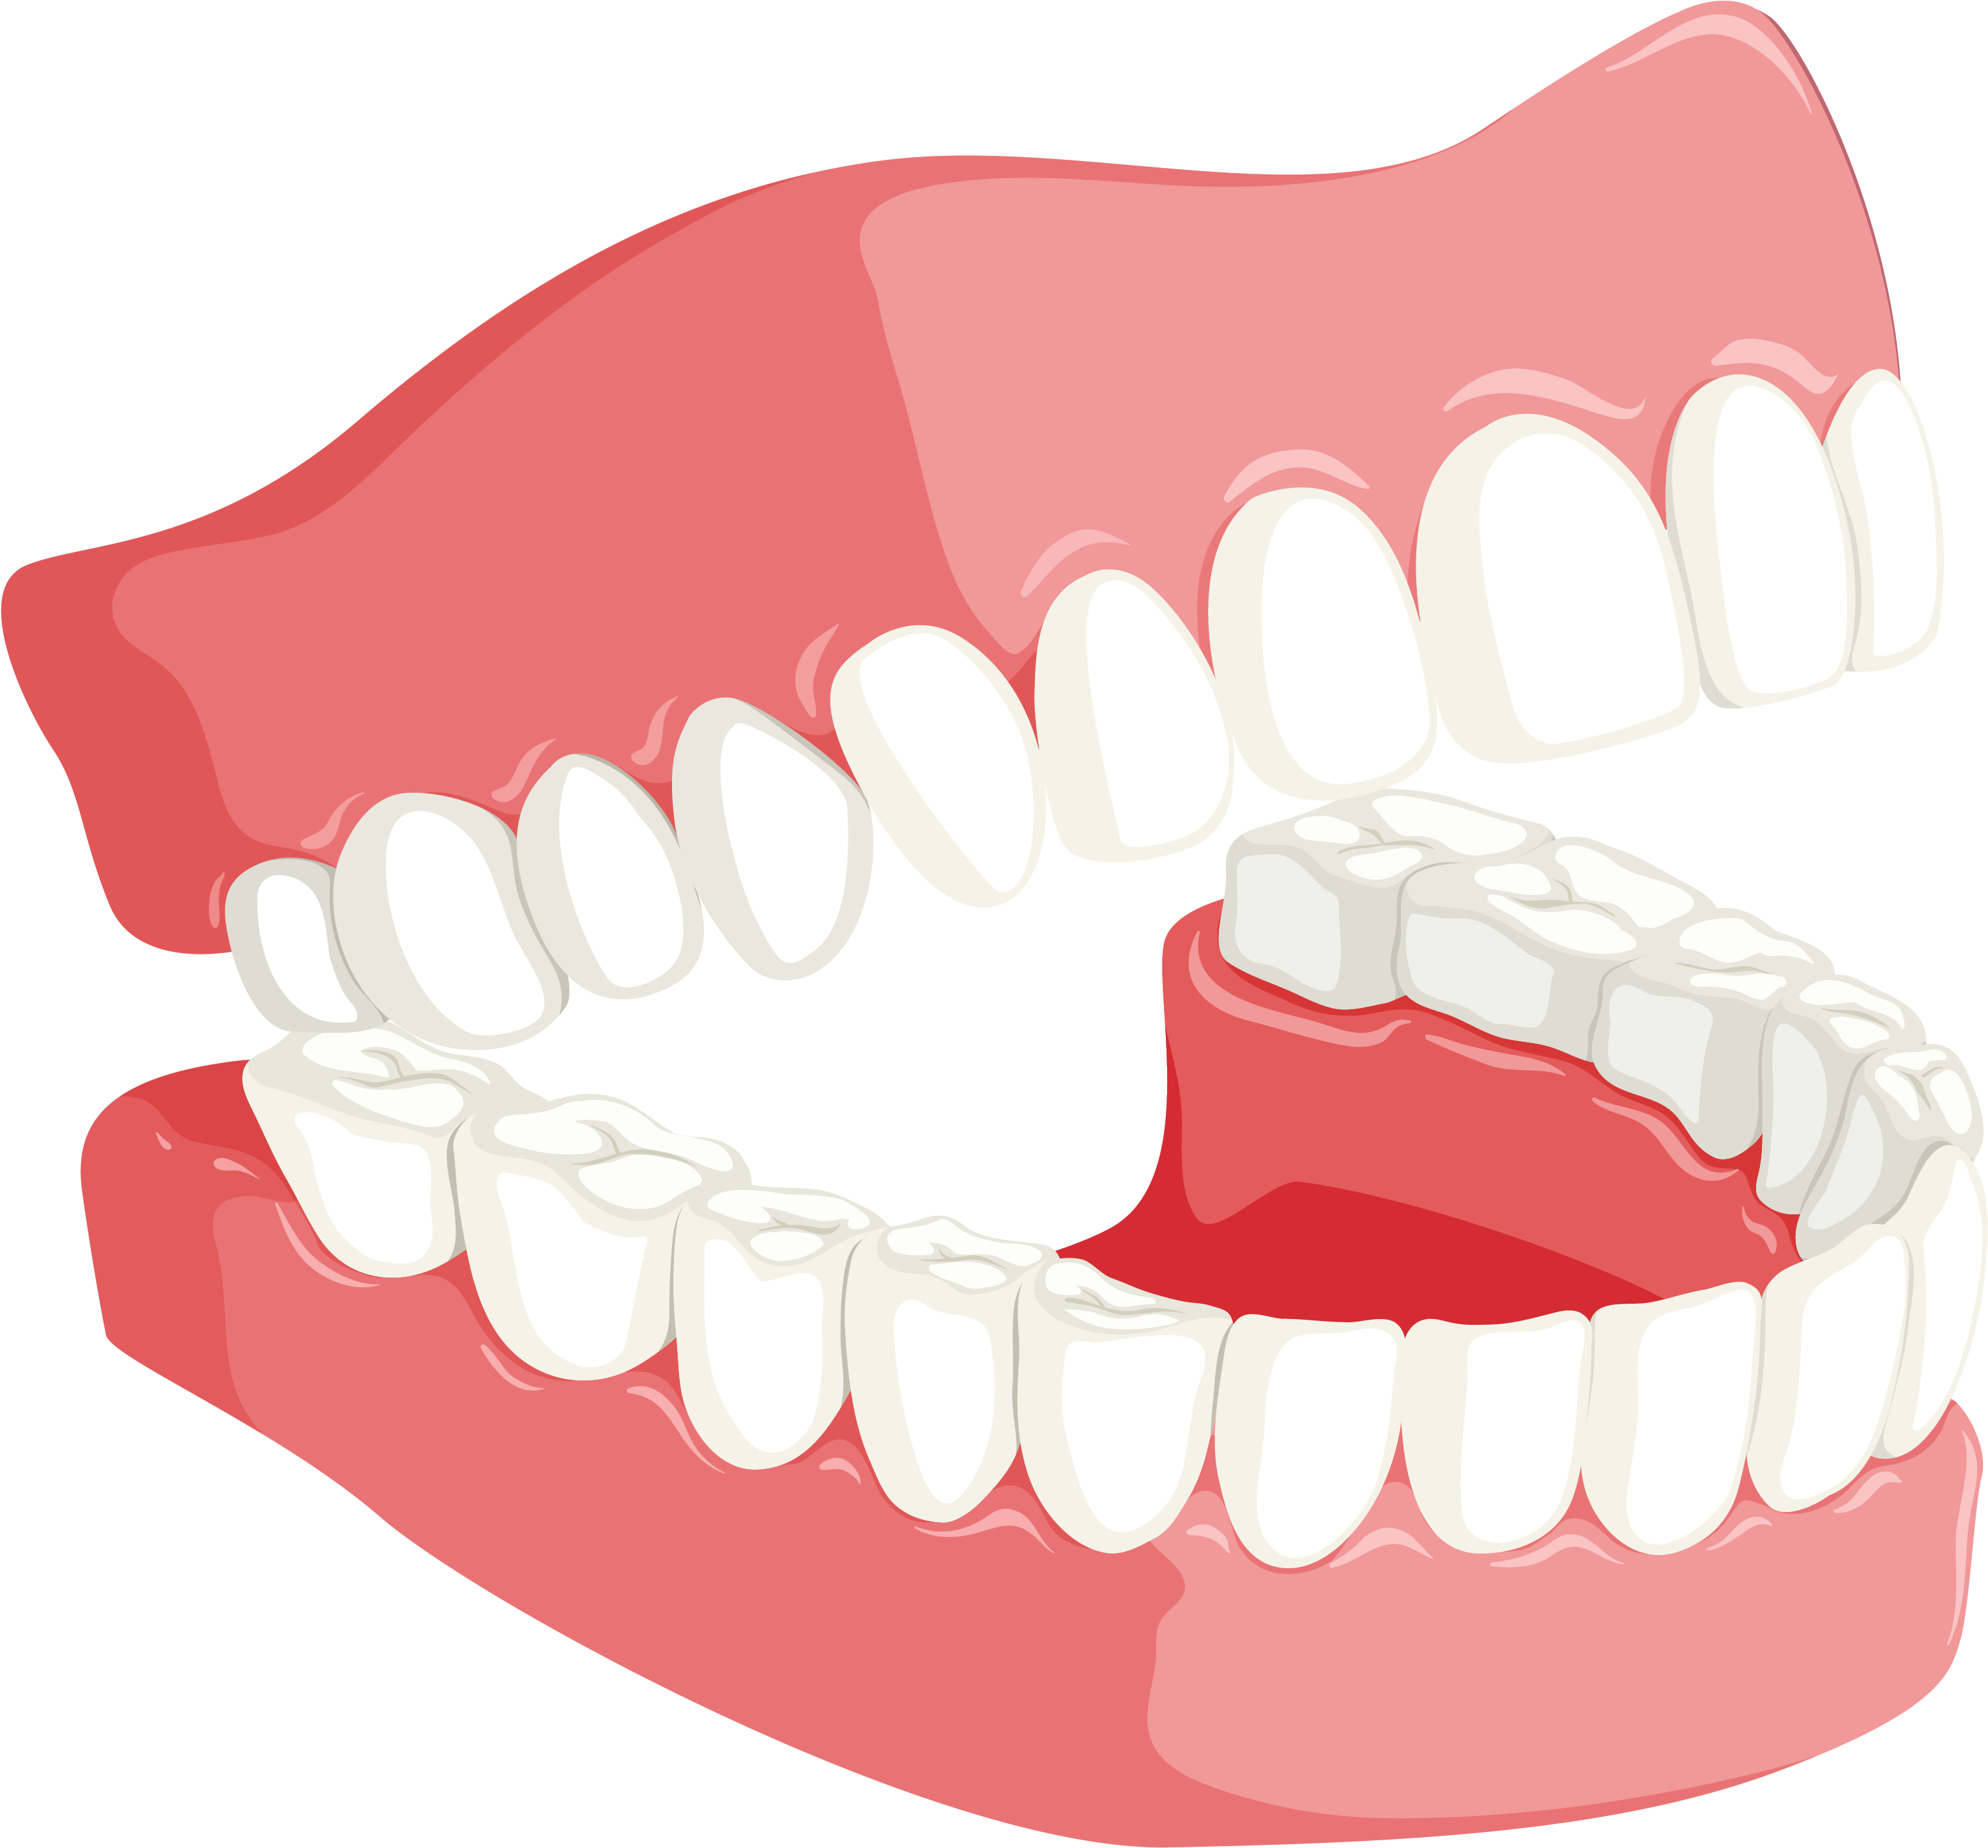 6251 X 4167 2 - Teeth Dental Png.